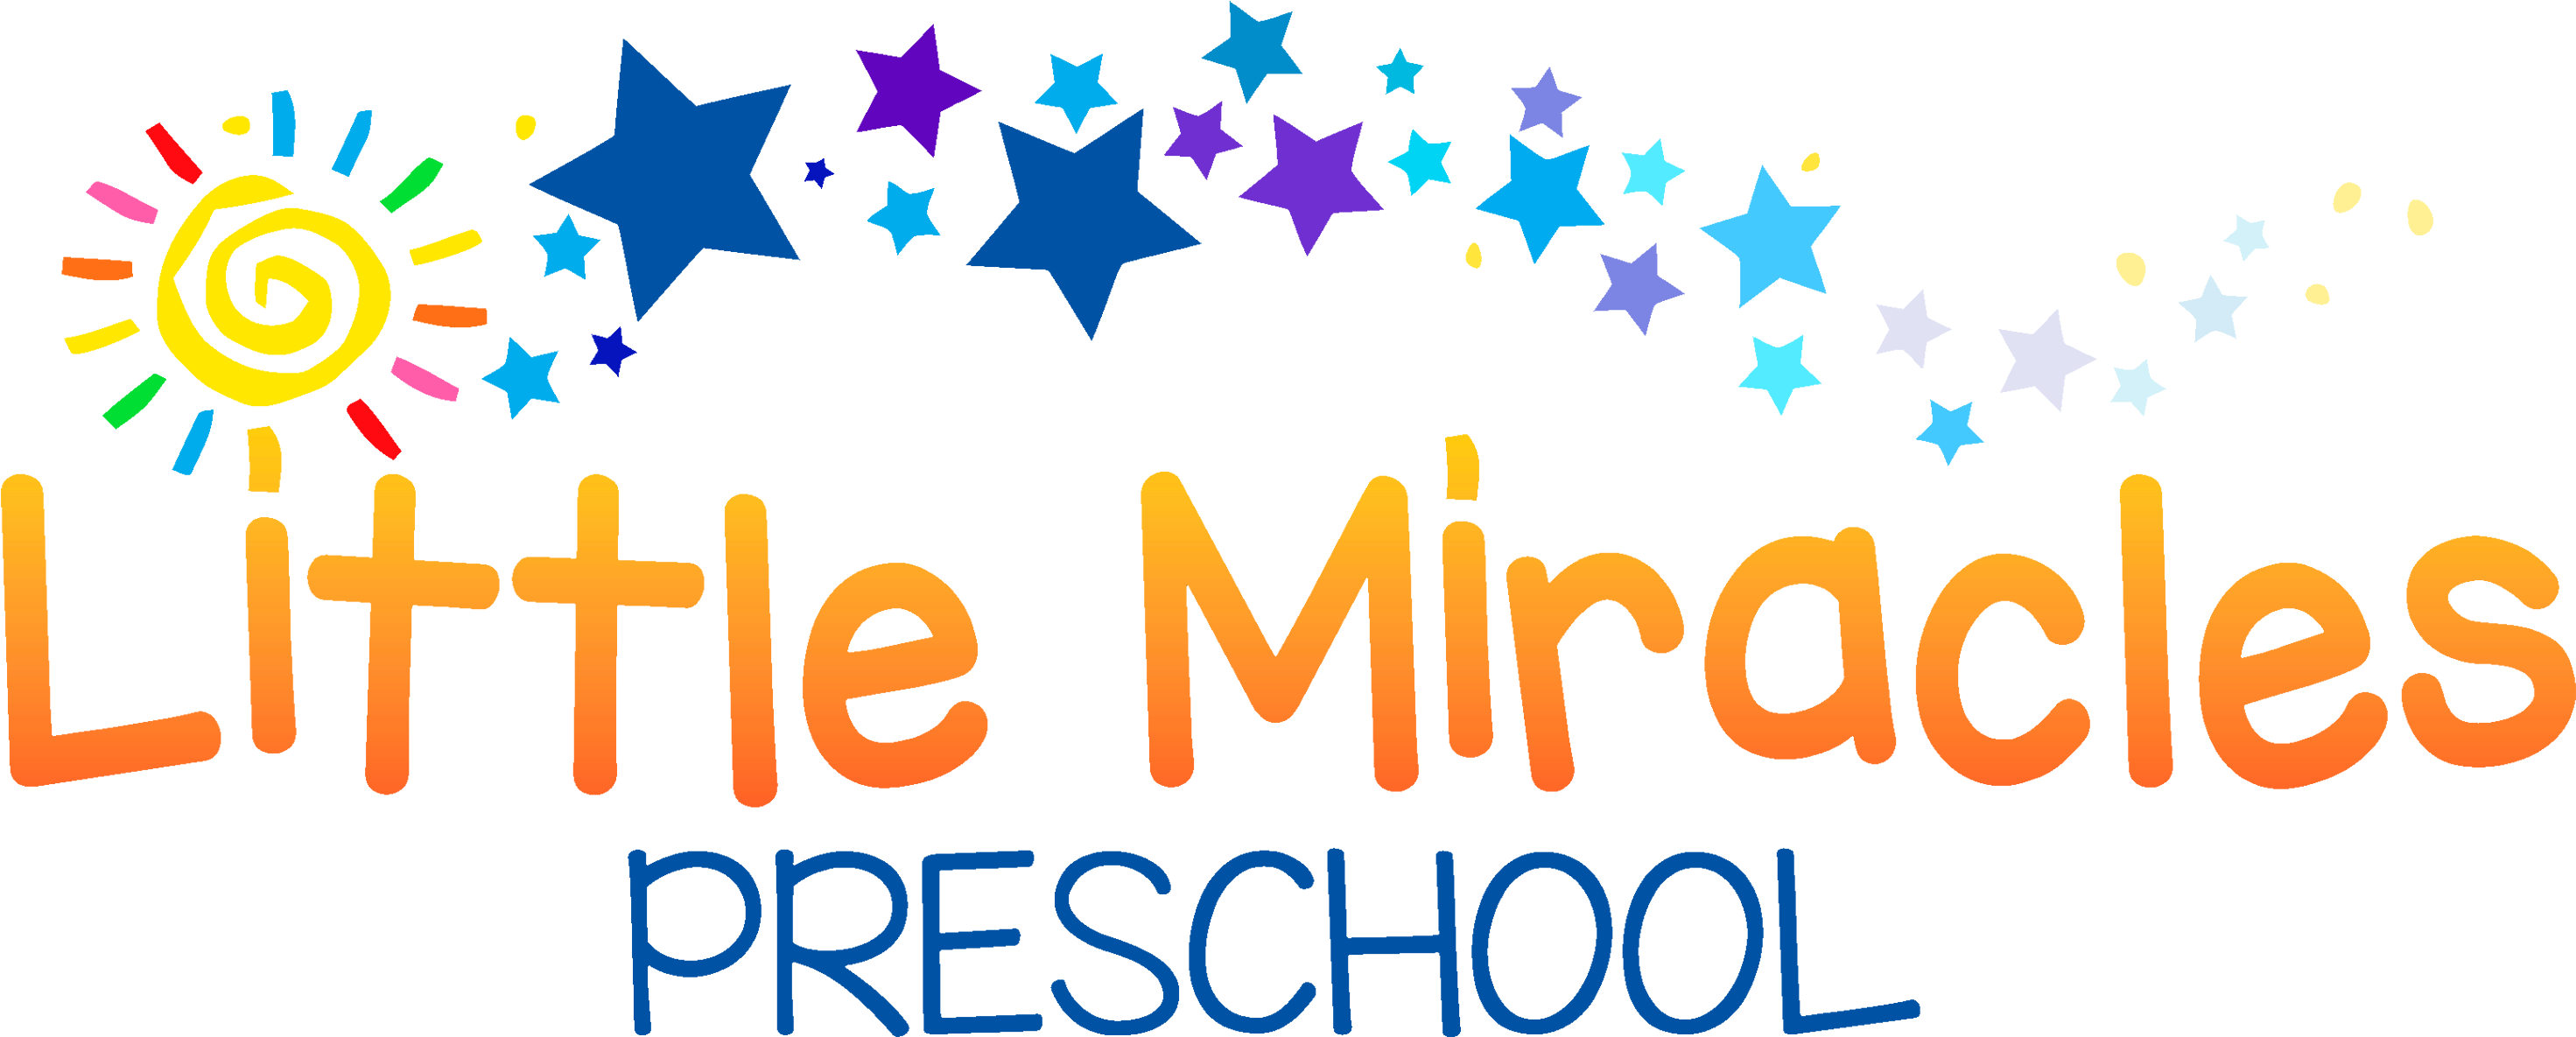 Little Miracles Pre-school - Little Miracles Preschool & Kindergarten (3000x1234)